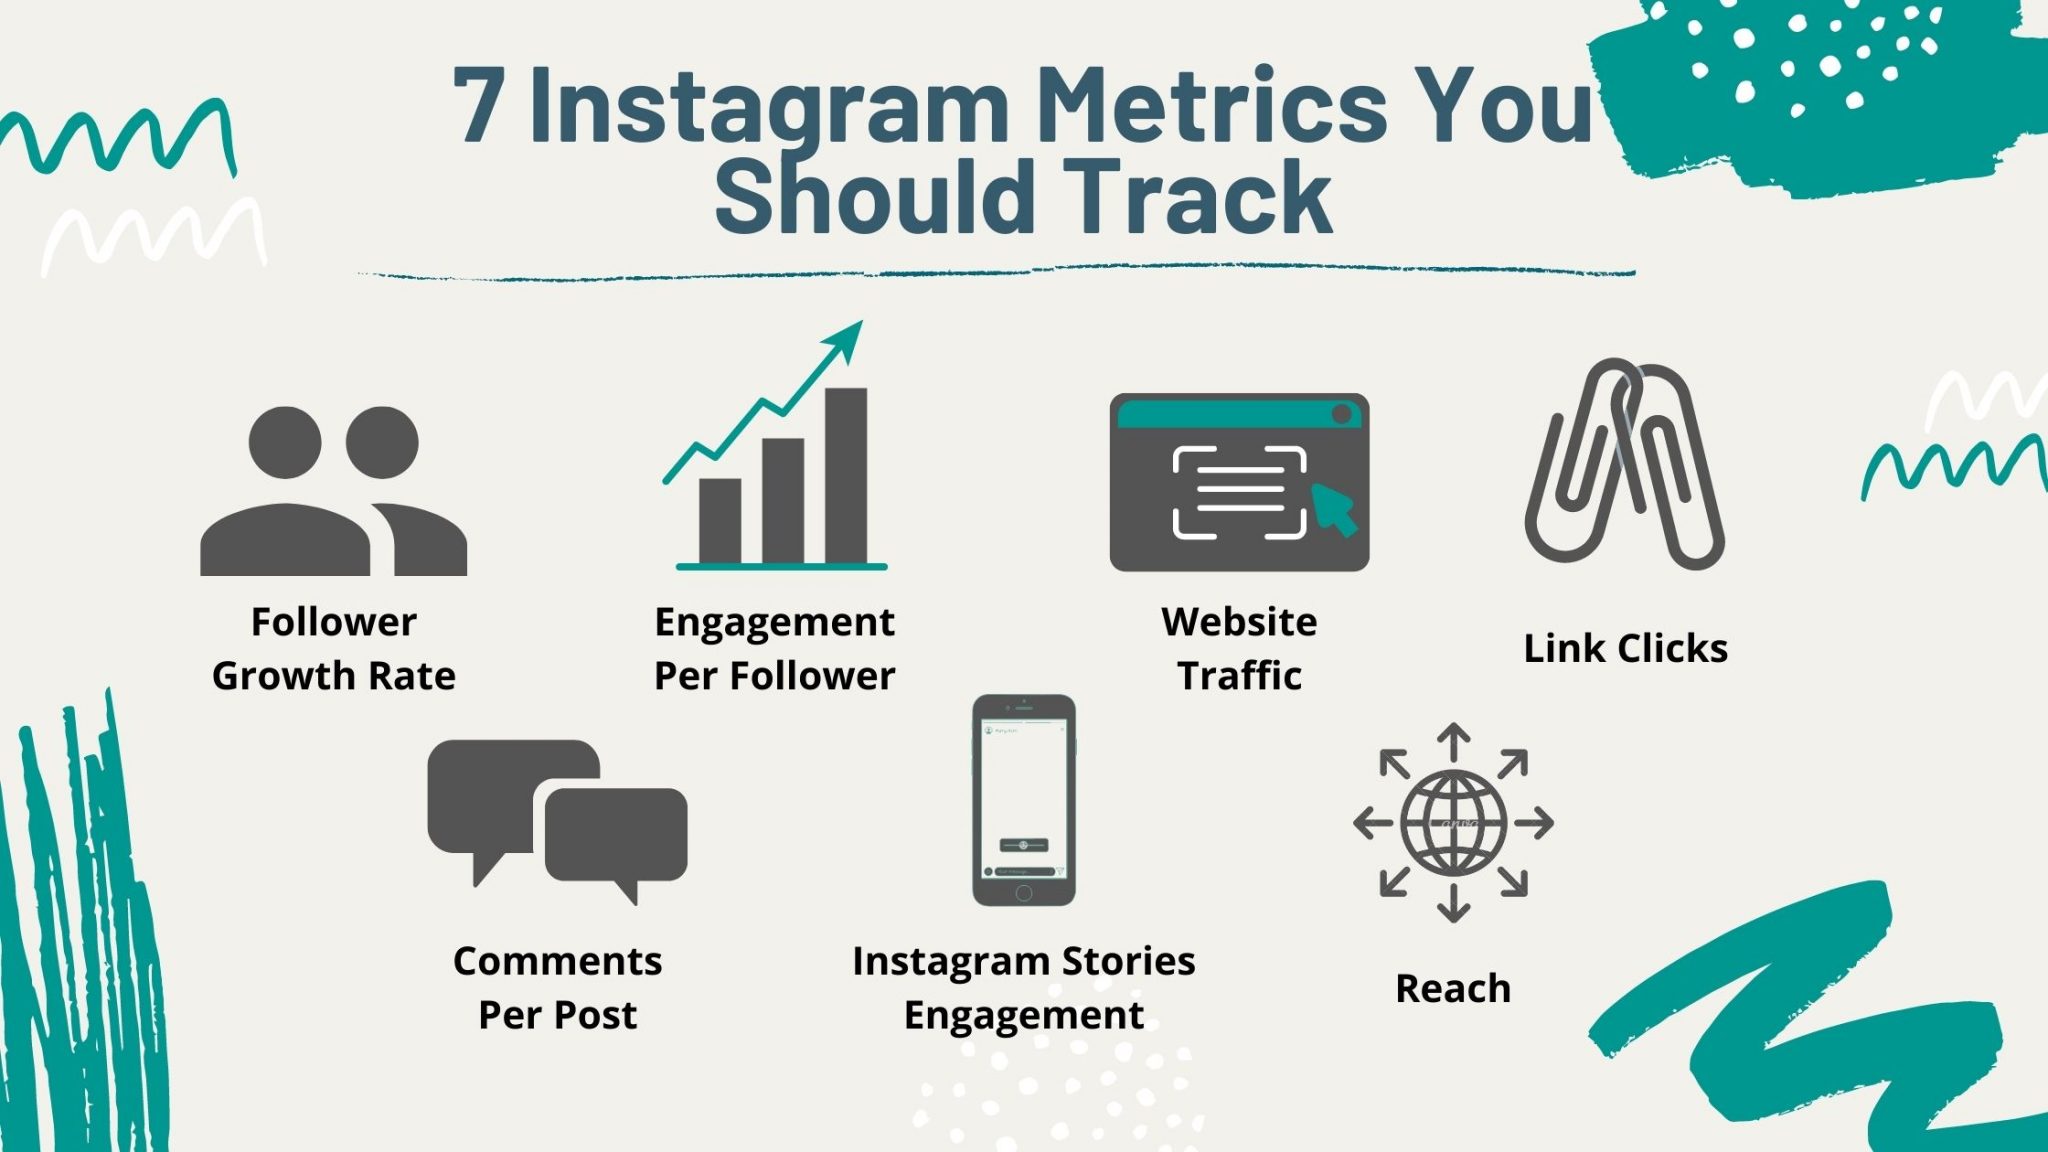 Metrics to Track on Instagram